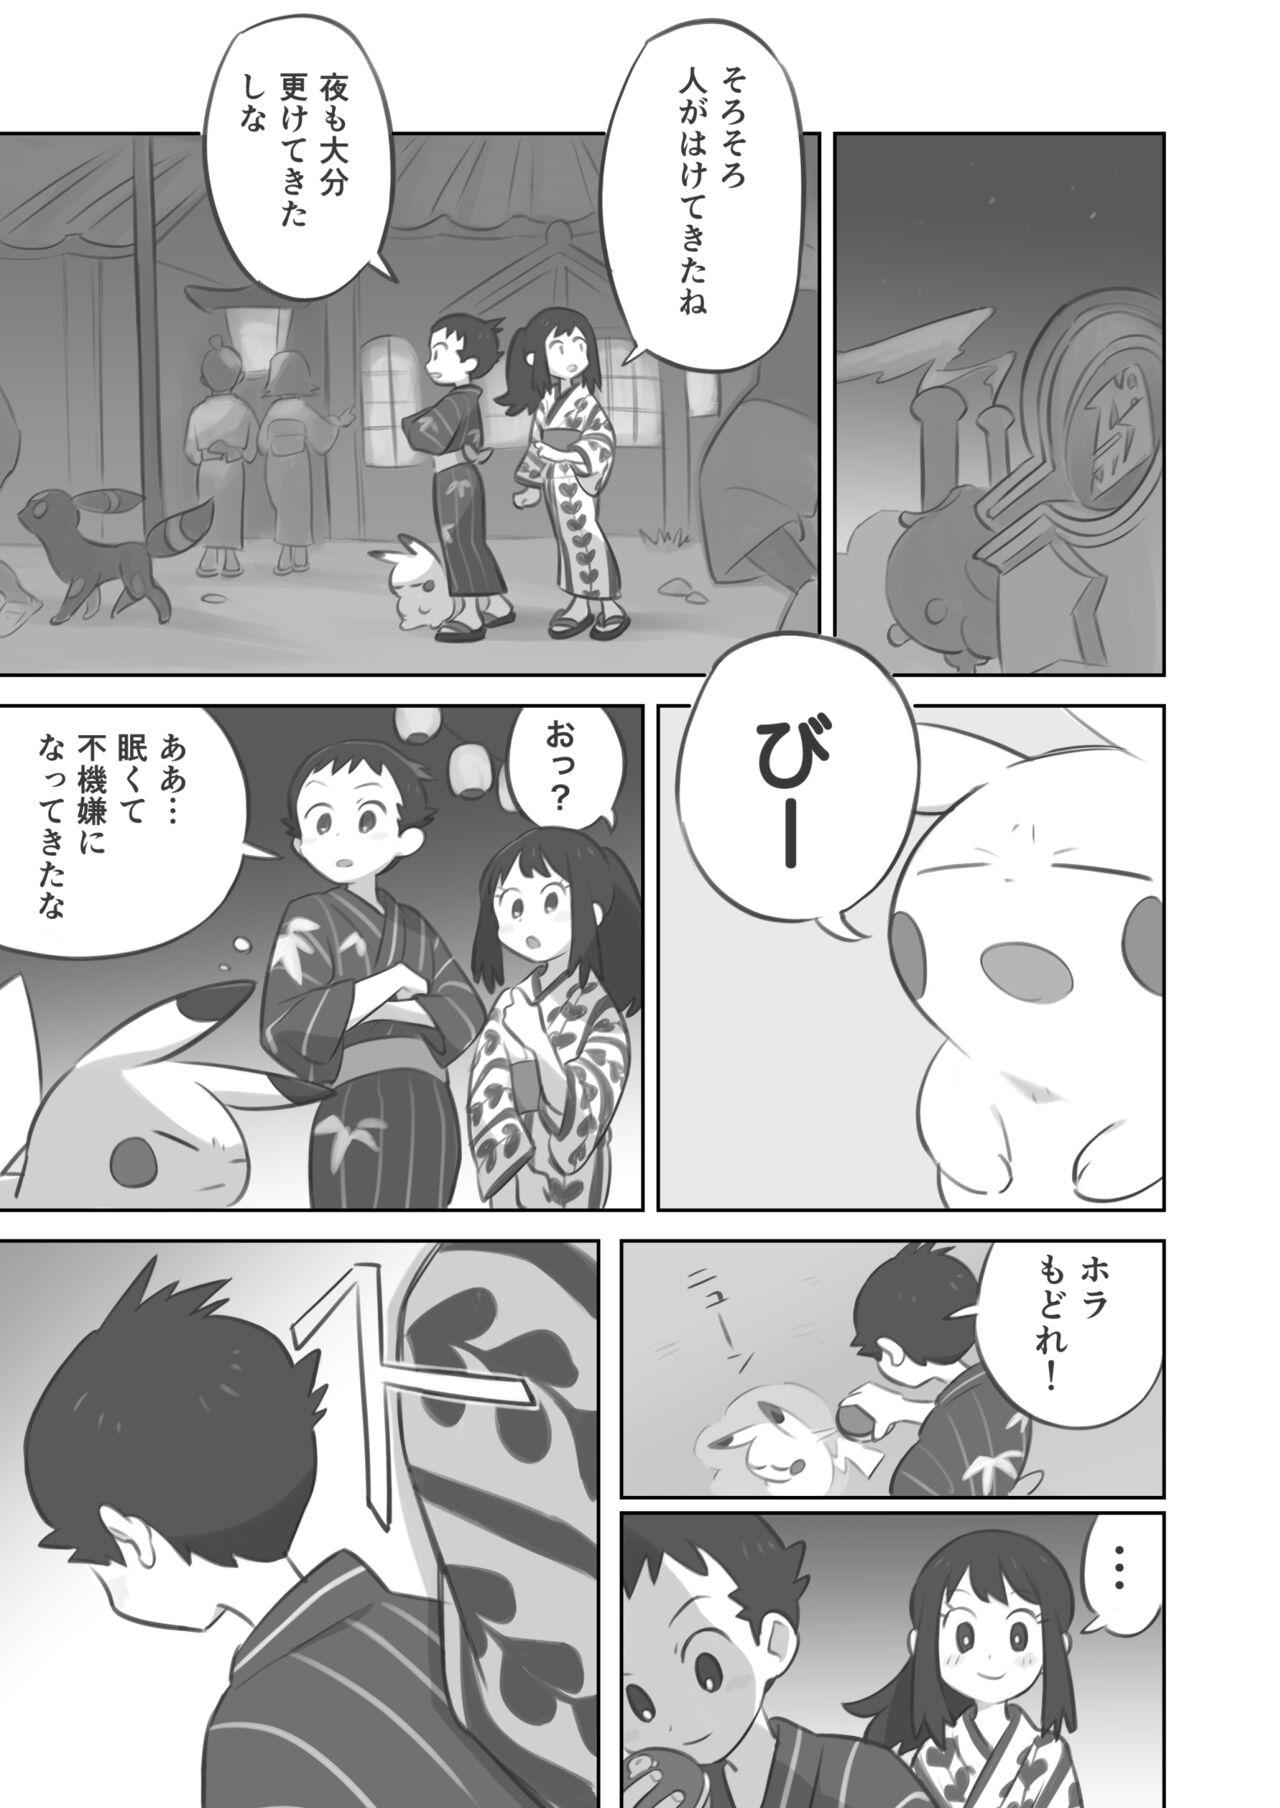 Edging Futanari shujinkō-chan ga Teru senpai o horu manga 2 - Pokemon | pocket monsters Reality - Page 3